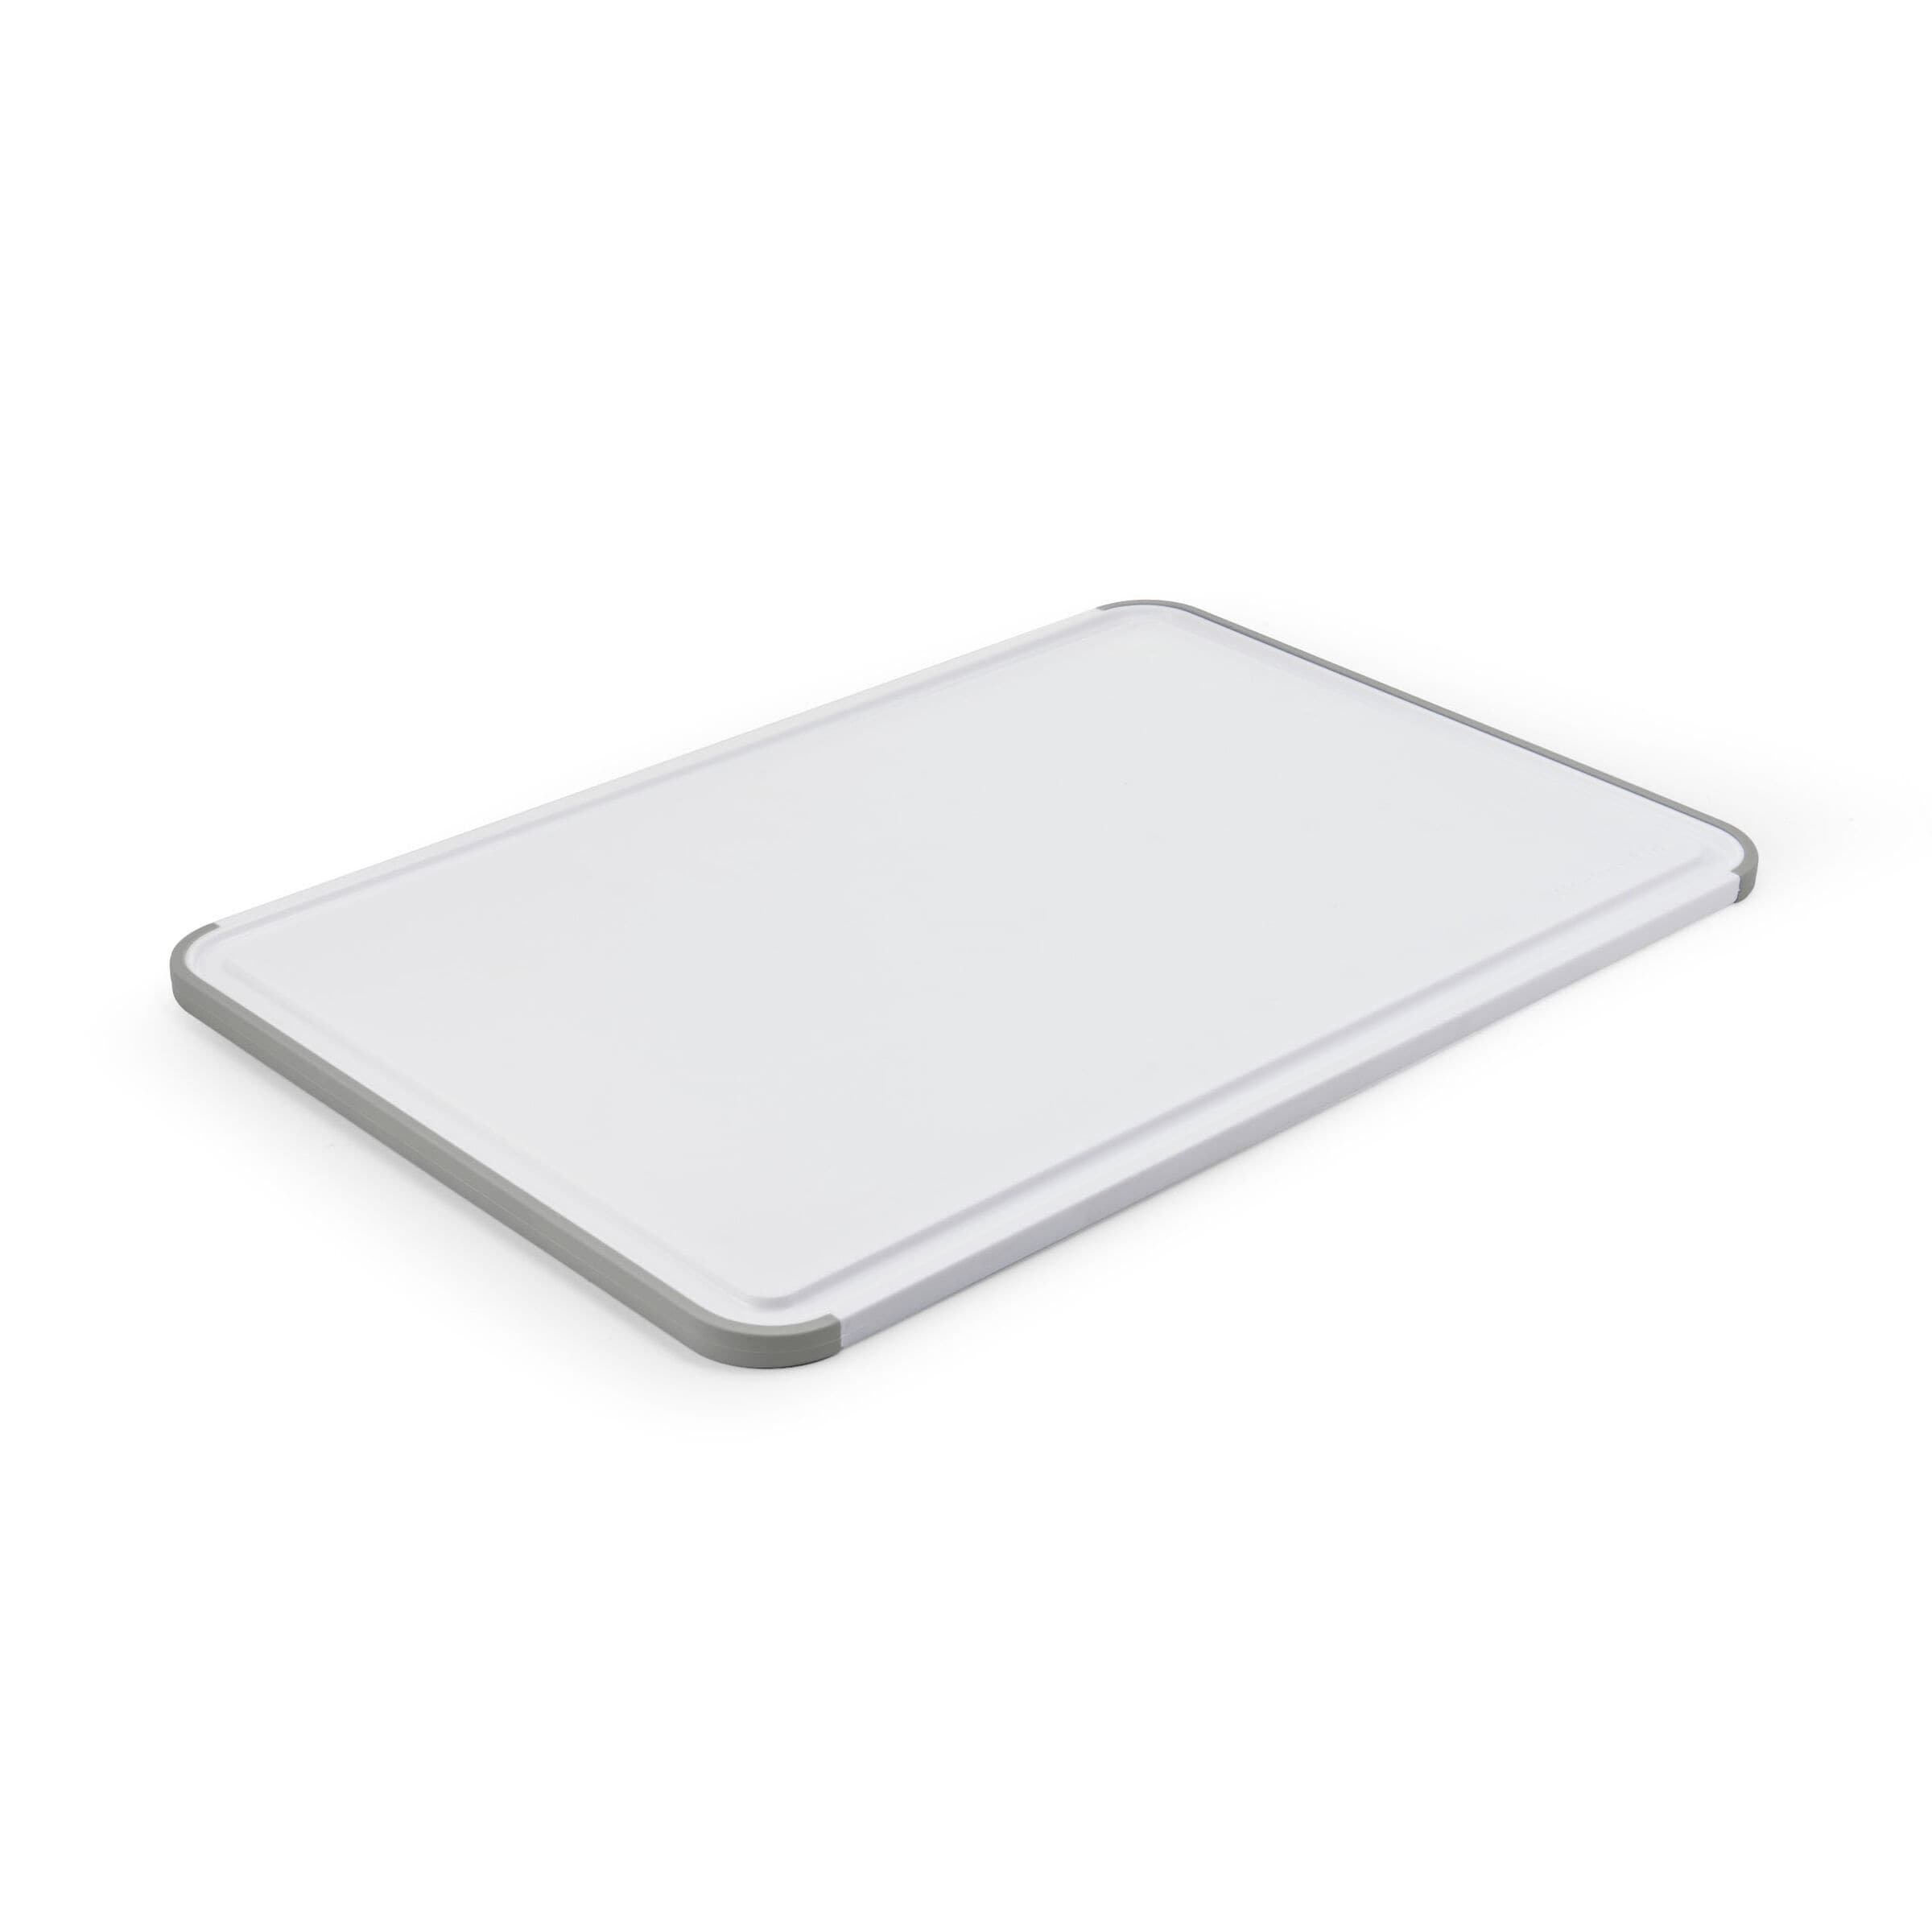 JoyJolt Plastic Cutting Board Set. White and Grey Cutting Boards